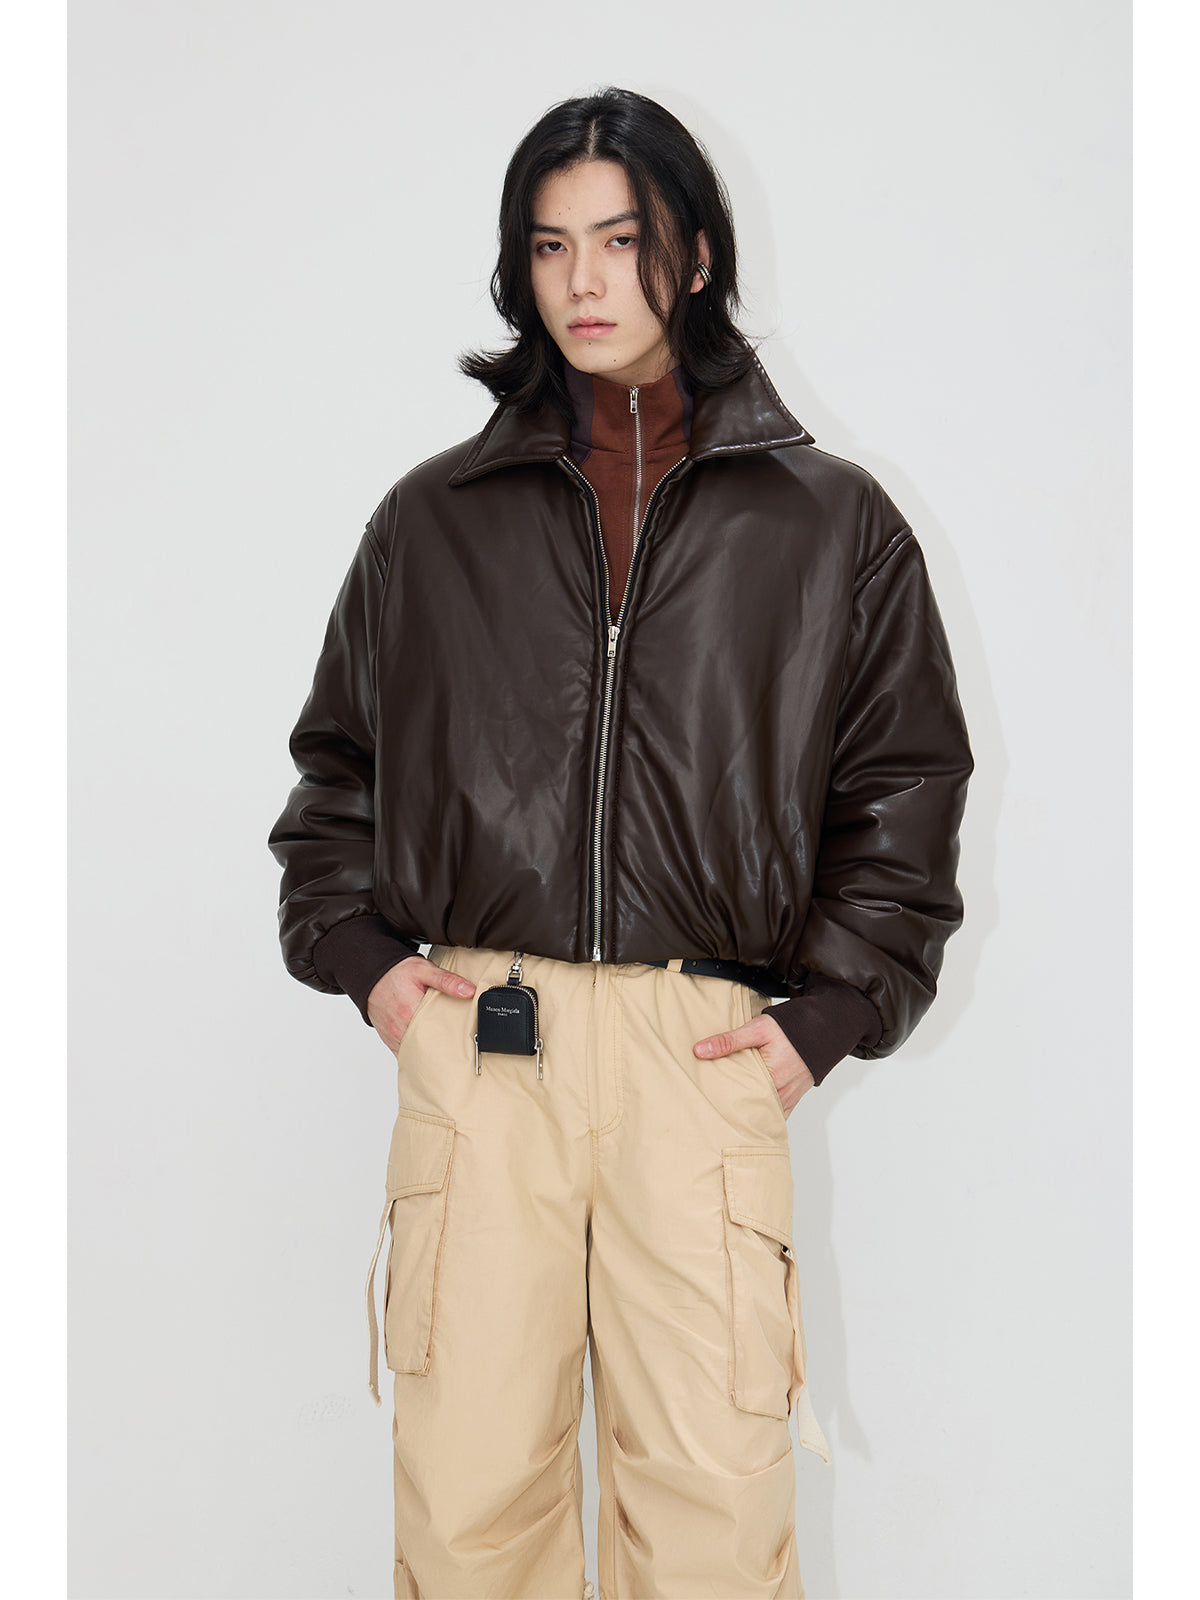 Dropped-Shoulder Leather Jacket PS7003 